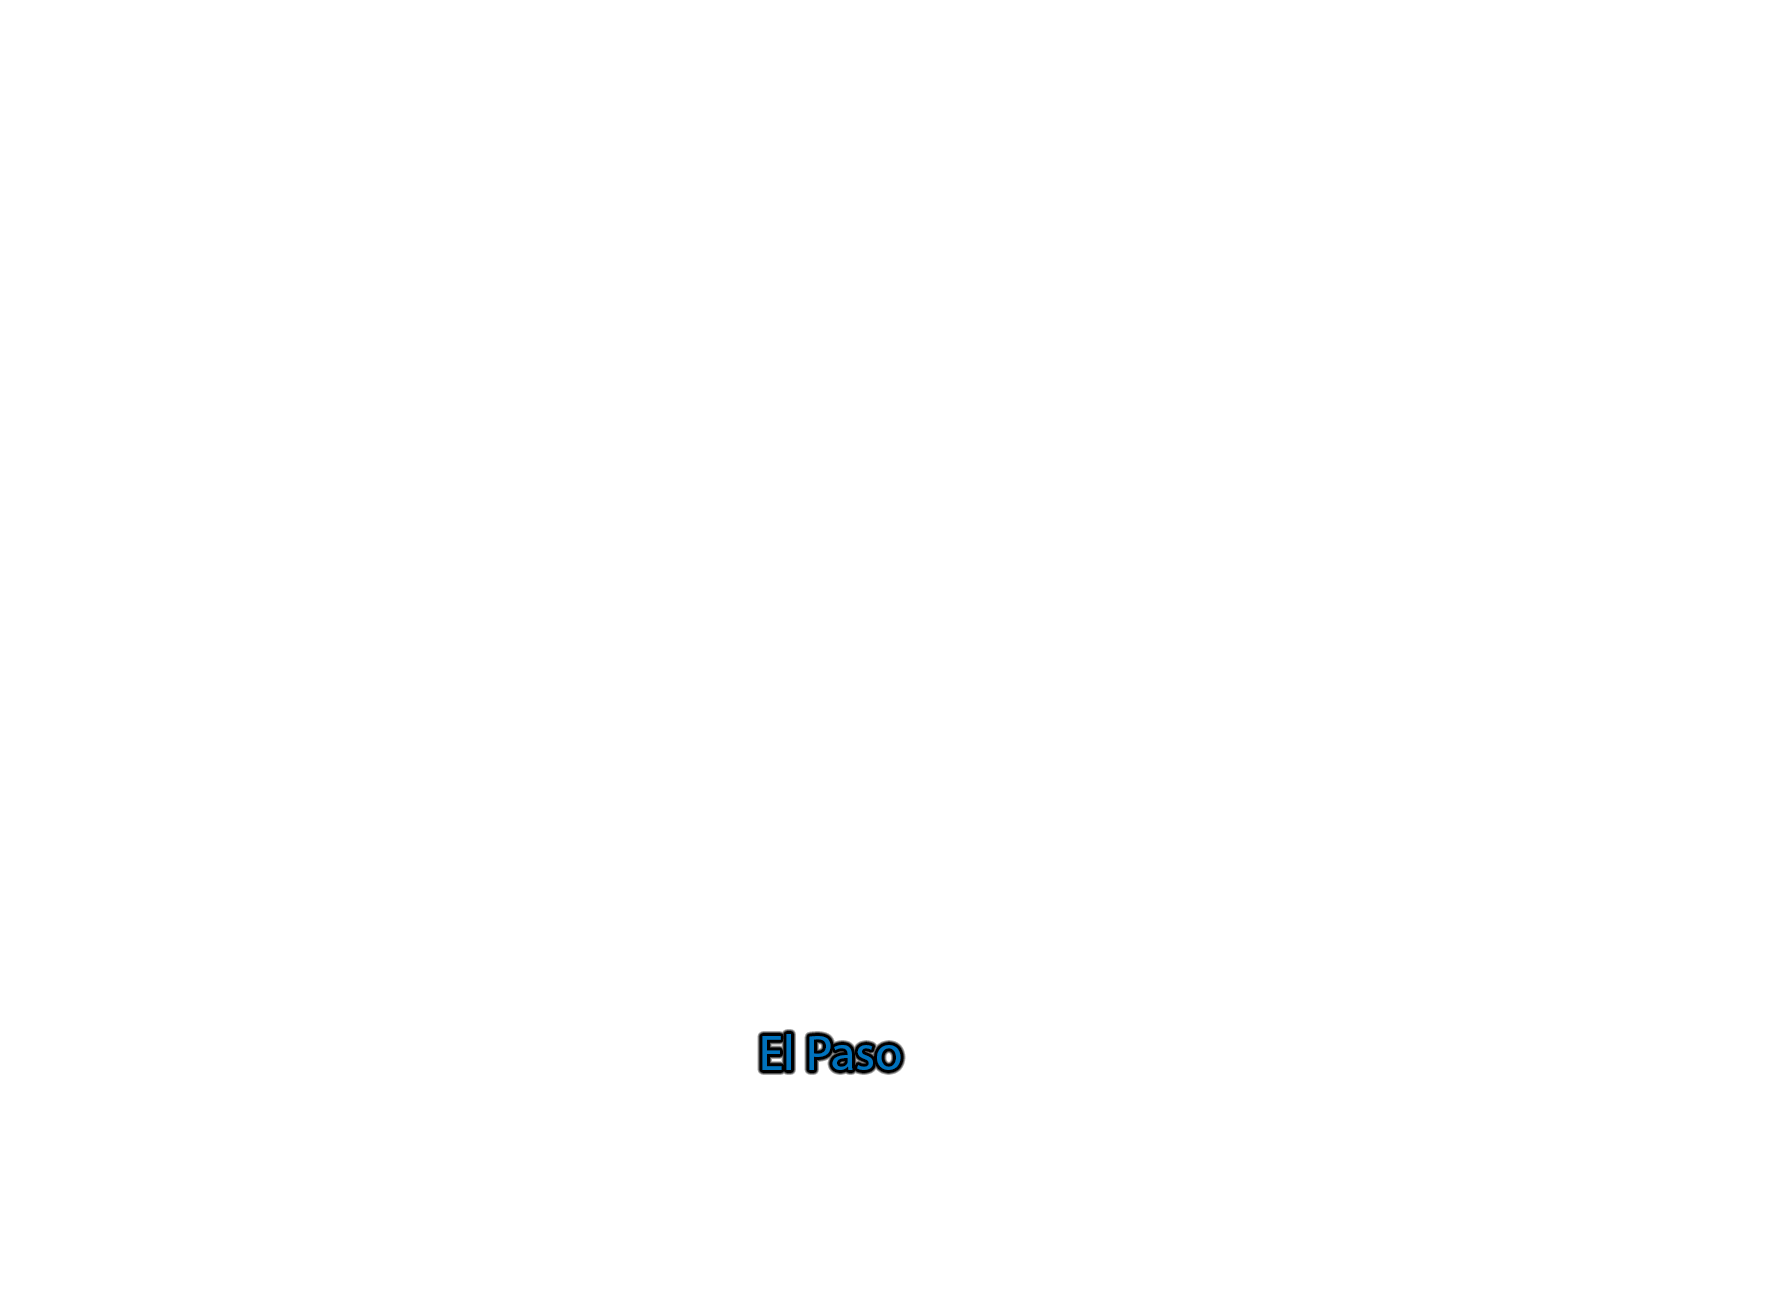 El-Paso label with glow